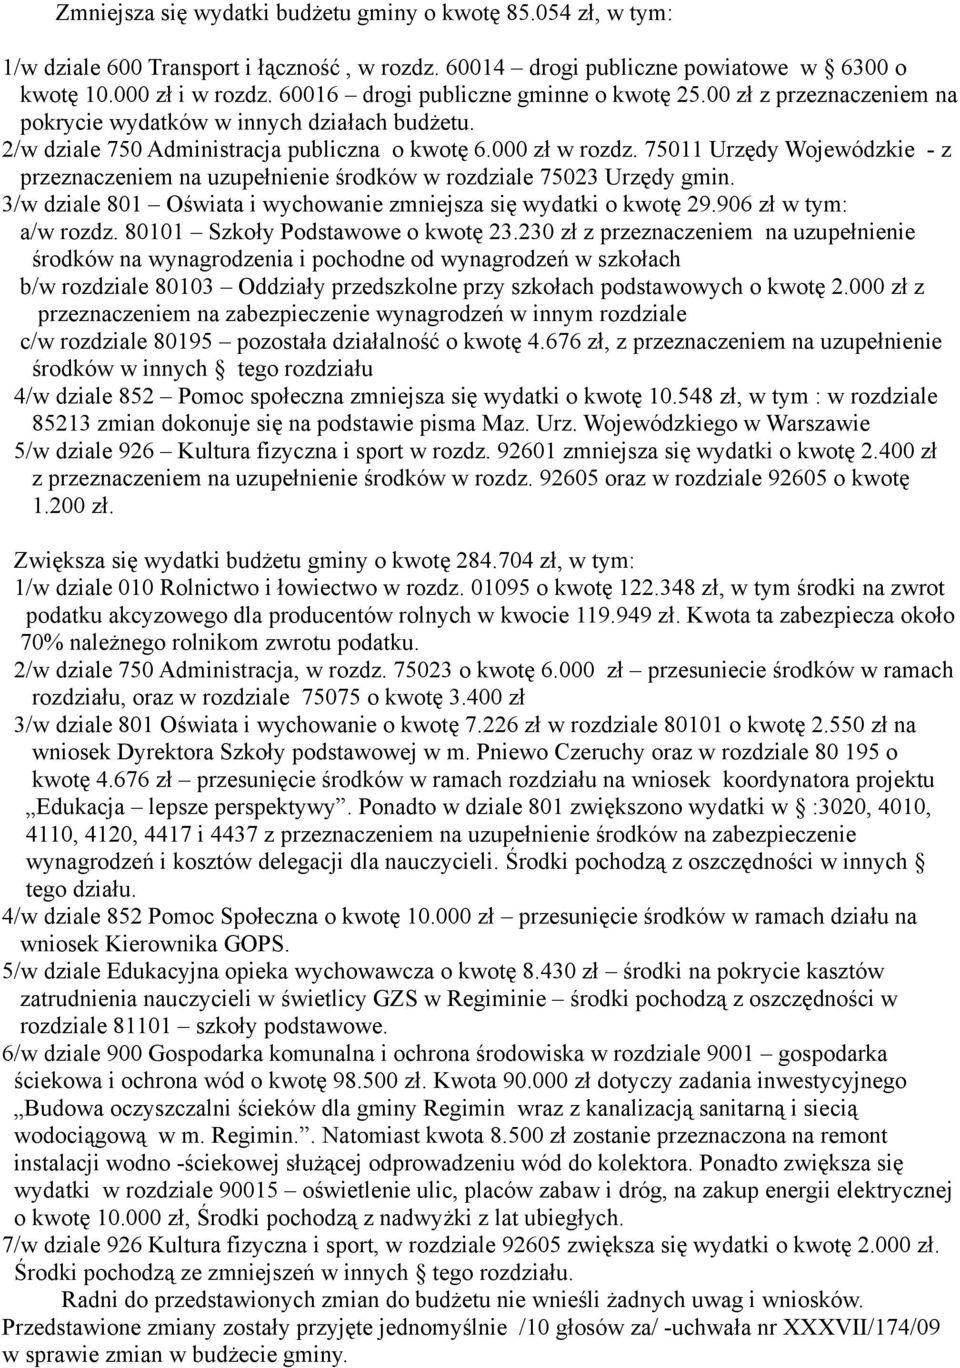 75011 Urzędy Wojewódzkie - z przeznaczeniem na uzupełnienie środków w rozdziale 75023 Urzędy gmin. 3/w dziale 801 Oświata i wychowanie zmniejsza się wydatki o kwotę 29.906 zł w tym: a/w rozdz.